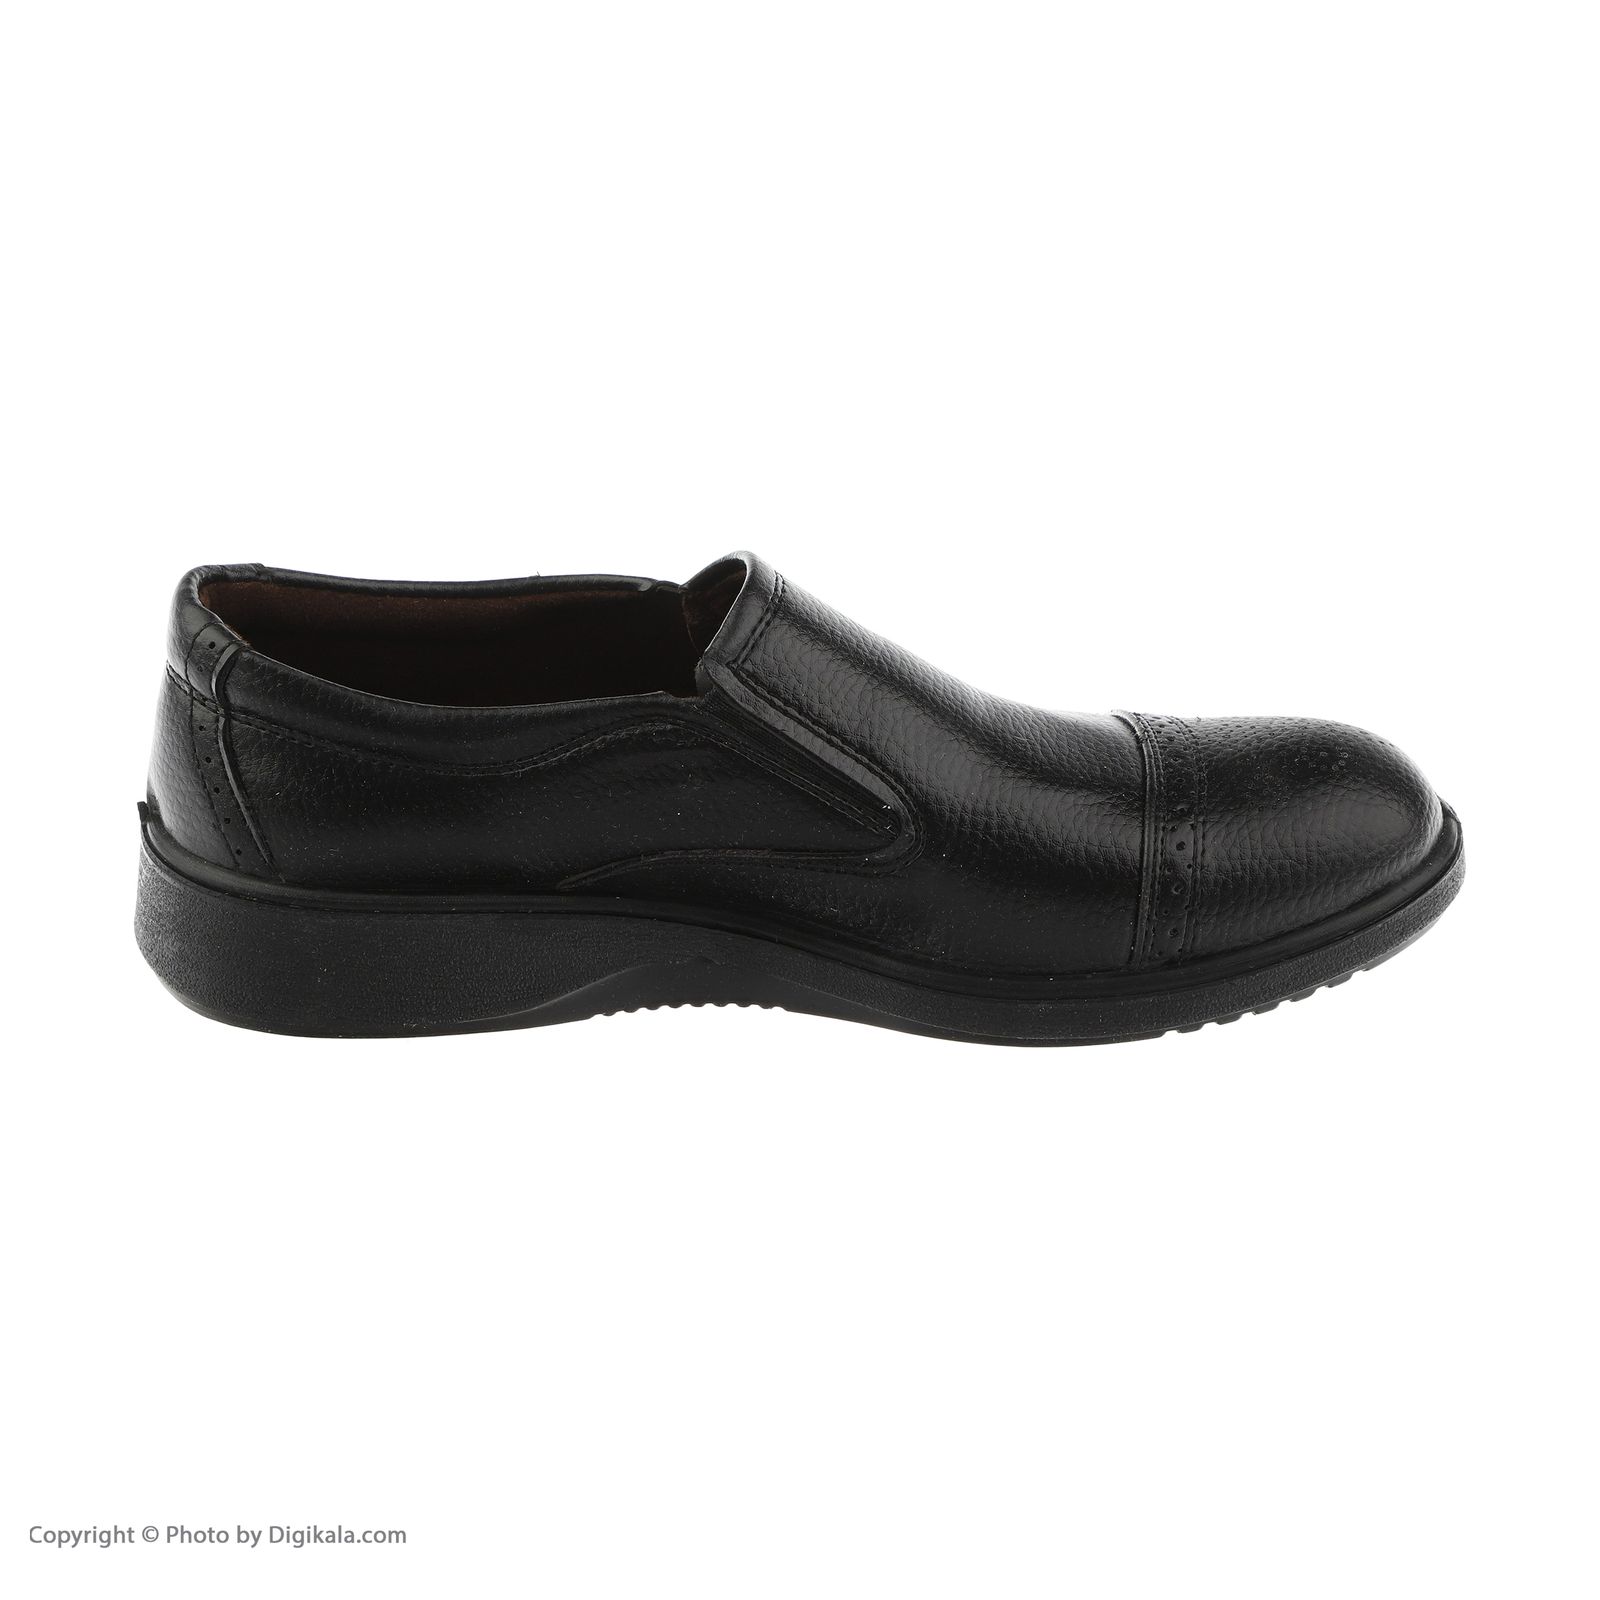 کفش روزمره مردانه کروماکی مدل طبی چرم مصنوعی فلوتر کد 1002 -  - 4